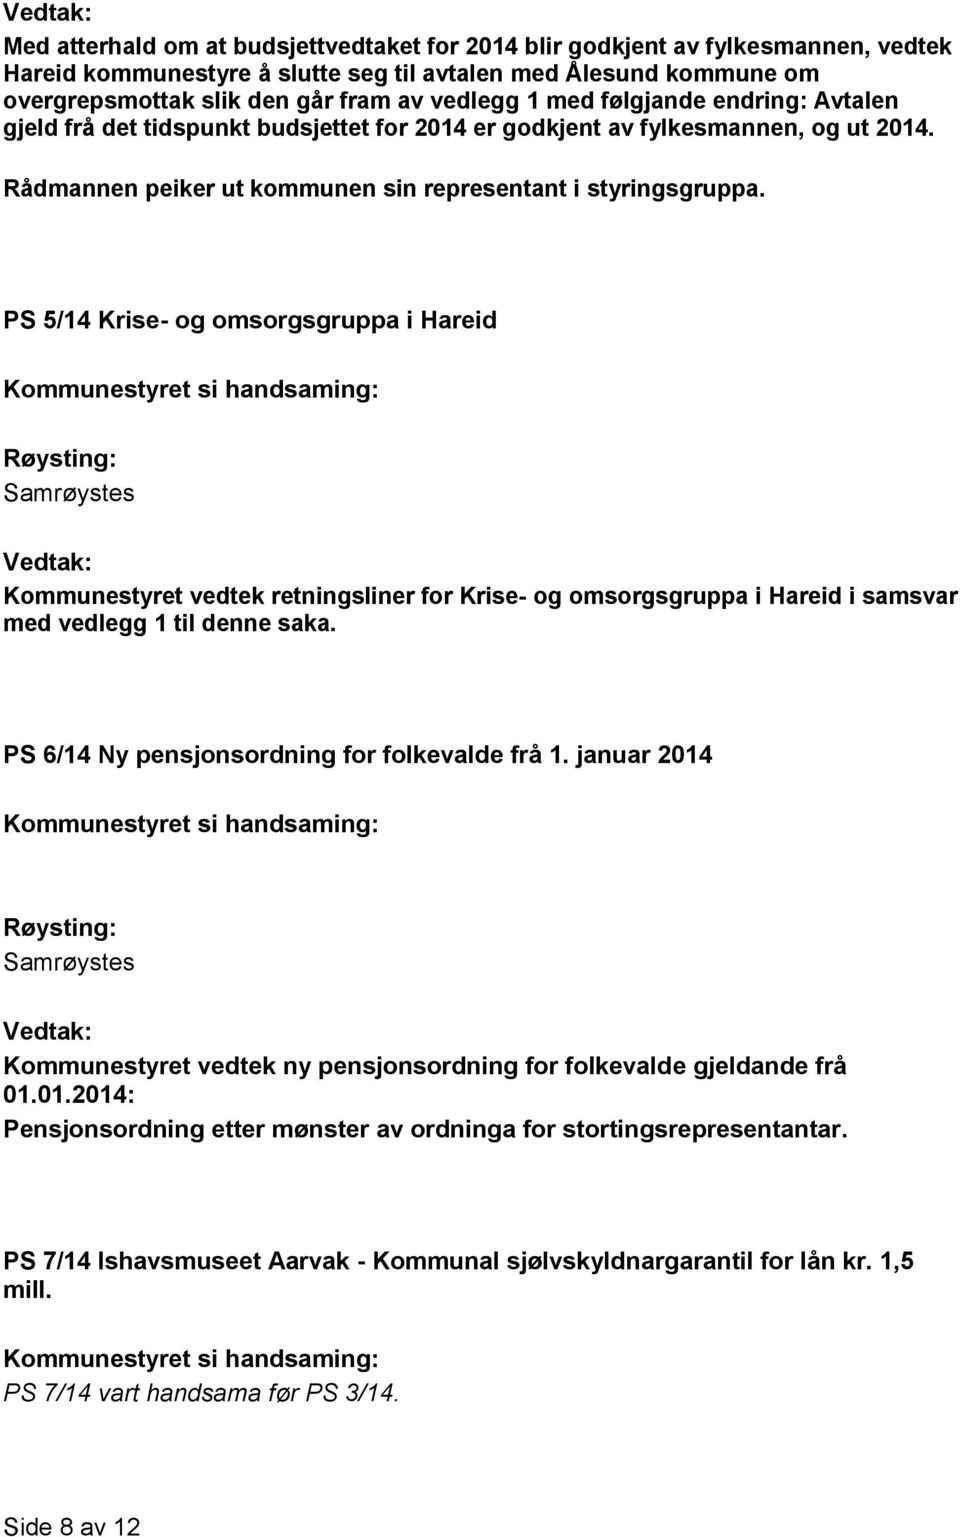 PS 5/14 Krise- og omsorgsgruppa i Hareid Kommunestyret vedtek retningsliner for Krise- og omsorgsgruppa i Hareid i samsvar med vedlegg 1 til denne saka.